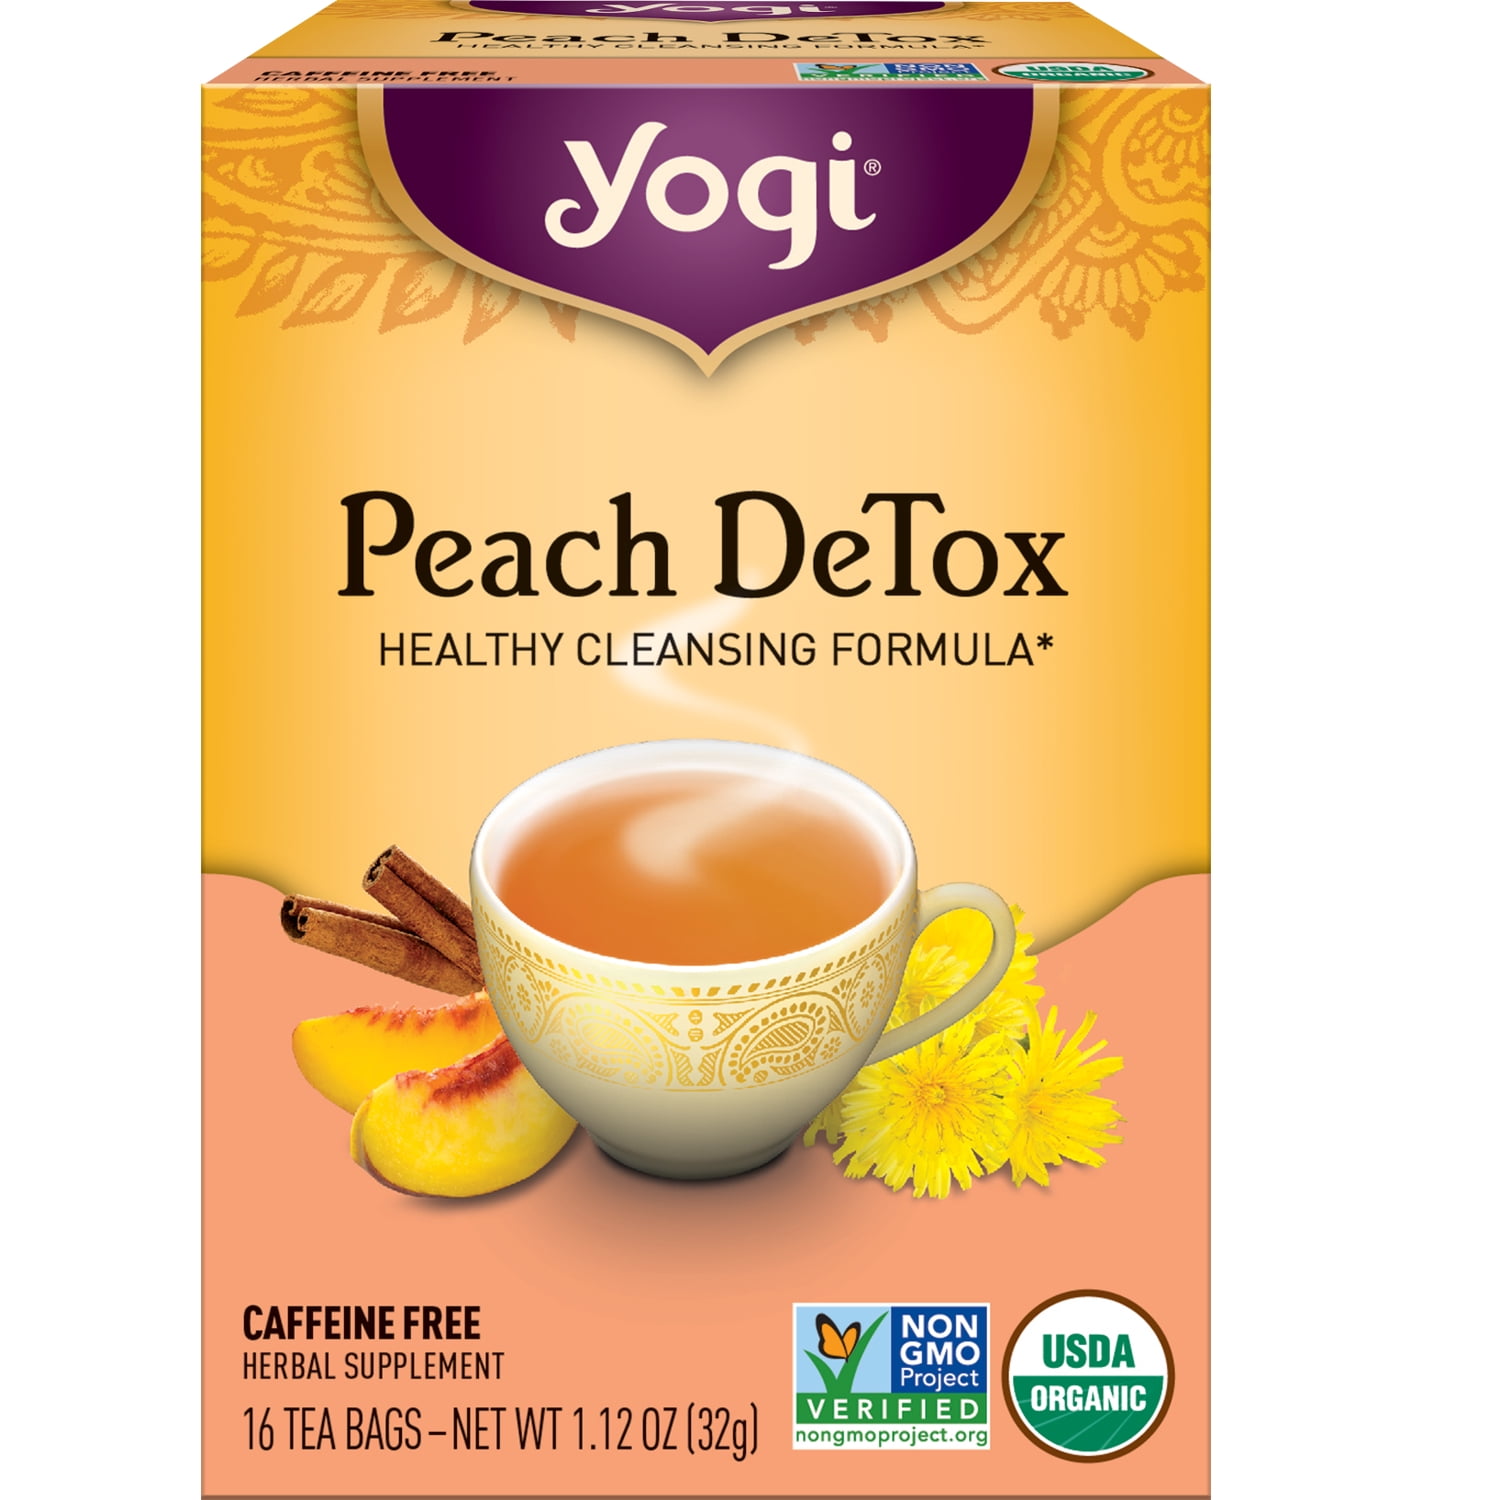 Yogi Tea Peach DeTox, Caffeine-Free Organic Herbal Tea, Wellness Tea Bags, 16 Count